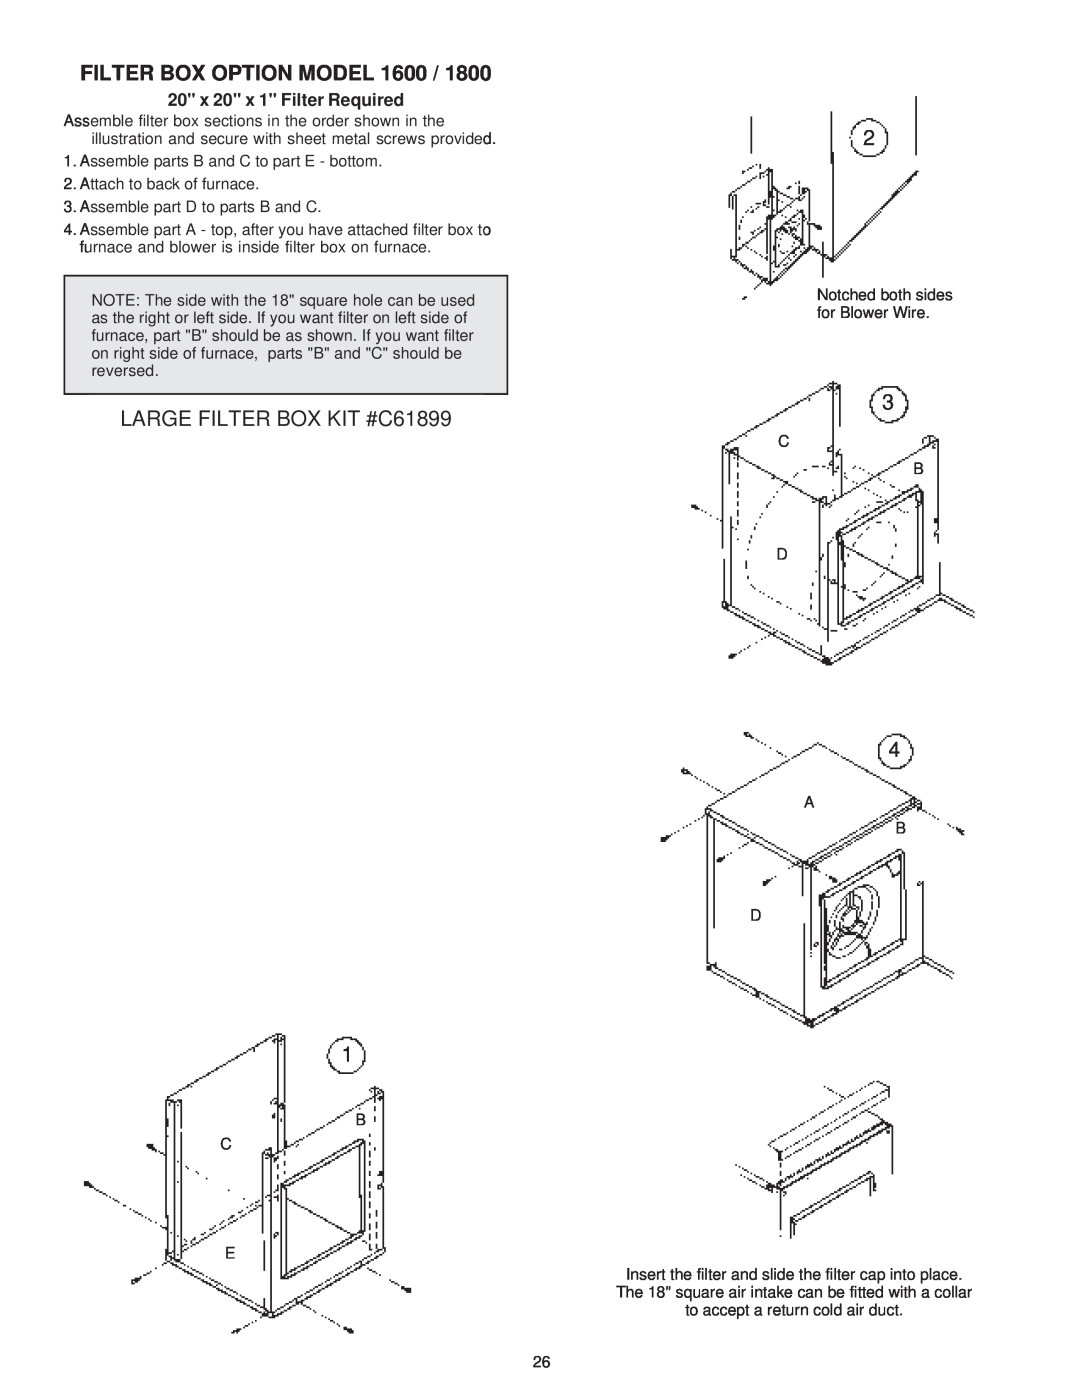 United States Stove 1800, 1600 manual Filter Box Option Model, LARGE FILTER BOX KIT #C61899 